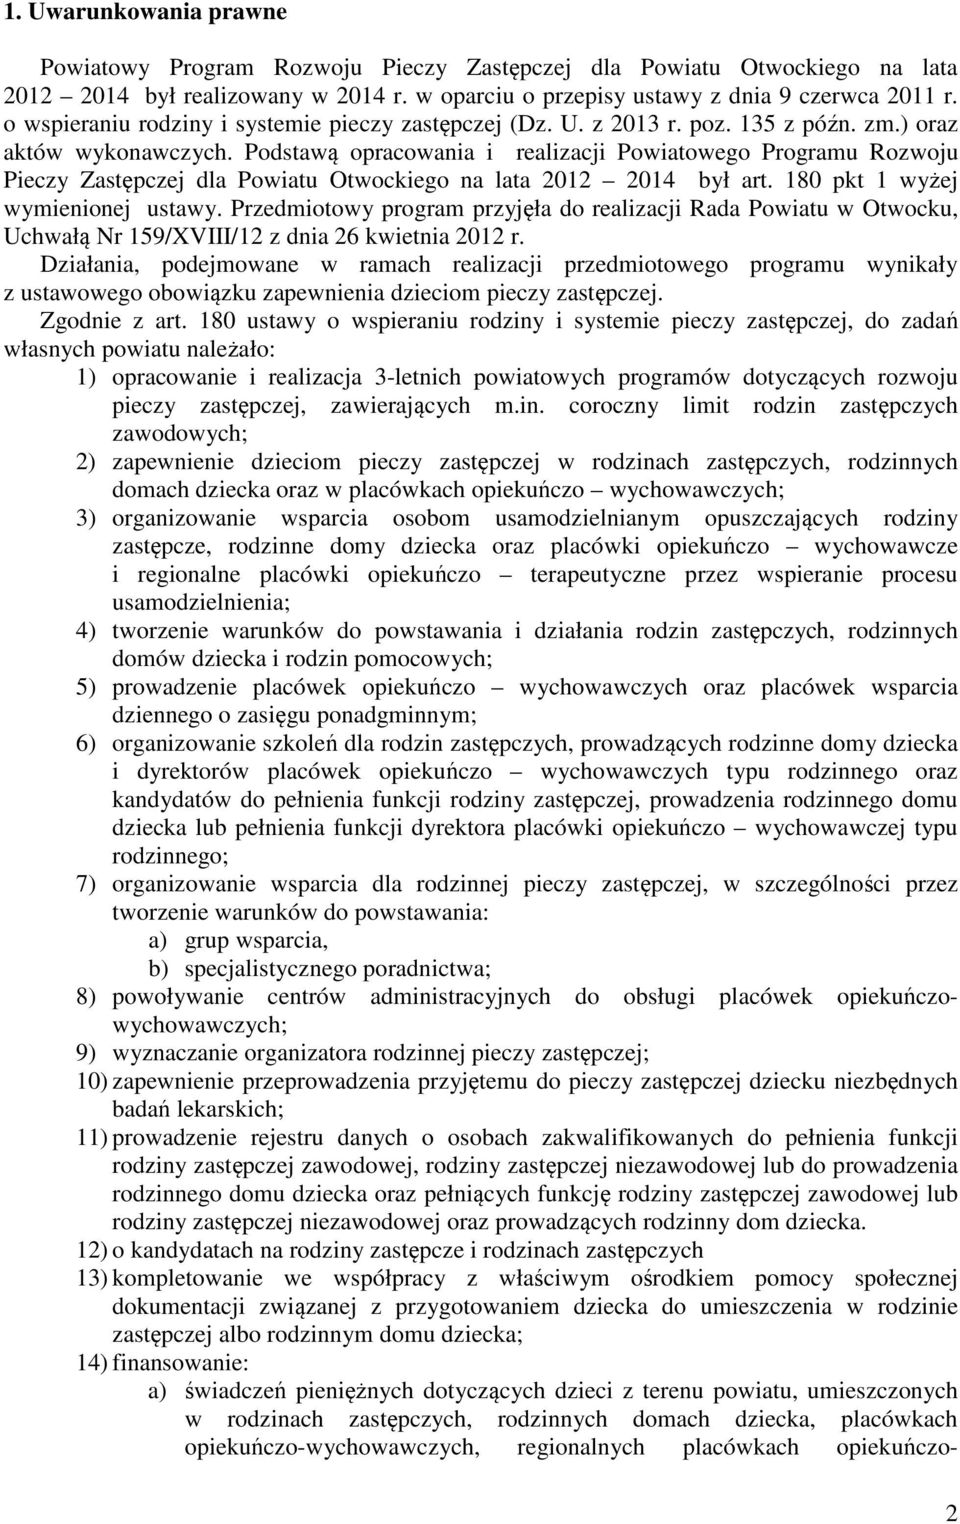 Podstawą opracowania i realizacji Powiatowego Programu Rozwoju Pieczy Zastępczej dla Powiatu Otwockiego na lata 2012 2014 był art. 180 pkt 1 wyżej wymienionej ustawy.